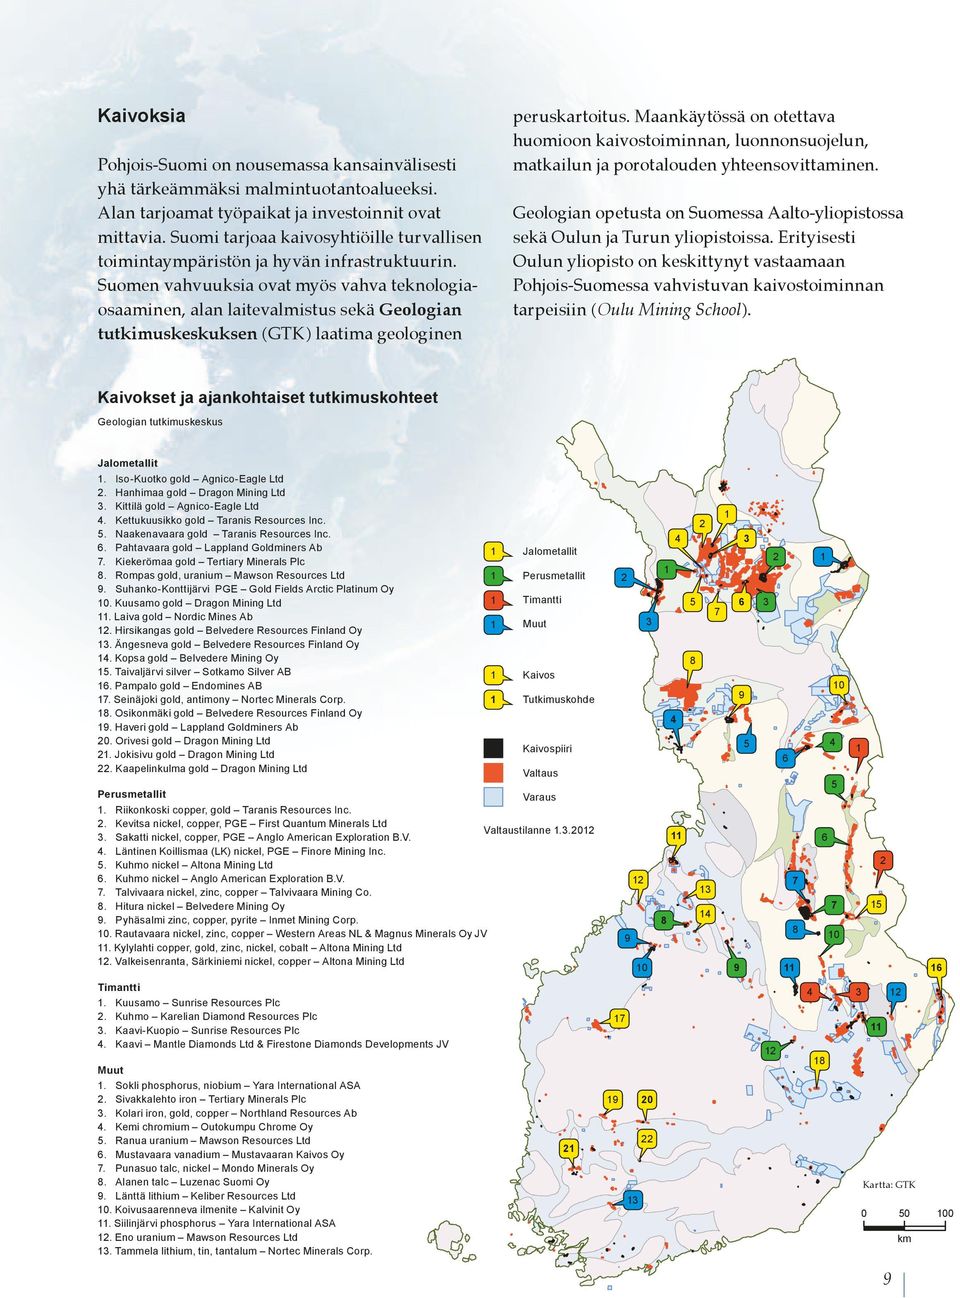 Suomi tarjoaa kaivosyhtiöille turvallisen toimintaympäristön ja hyvän infrastruktuurin.